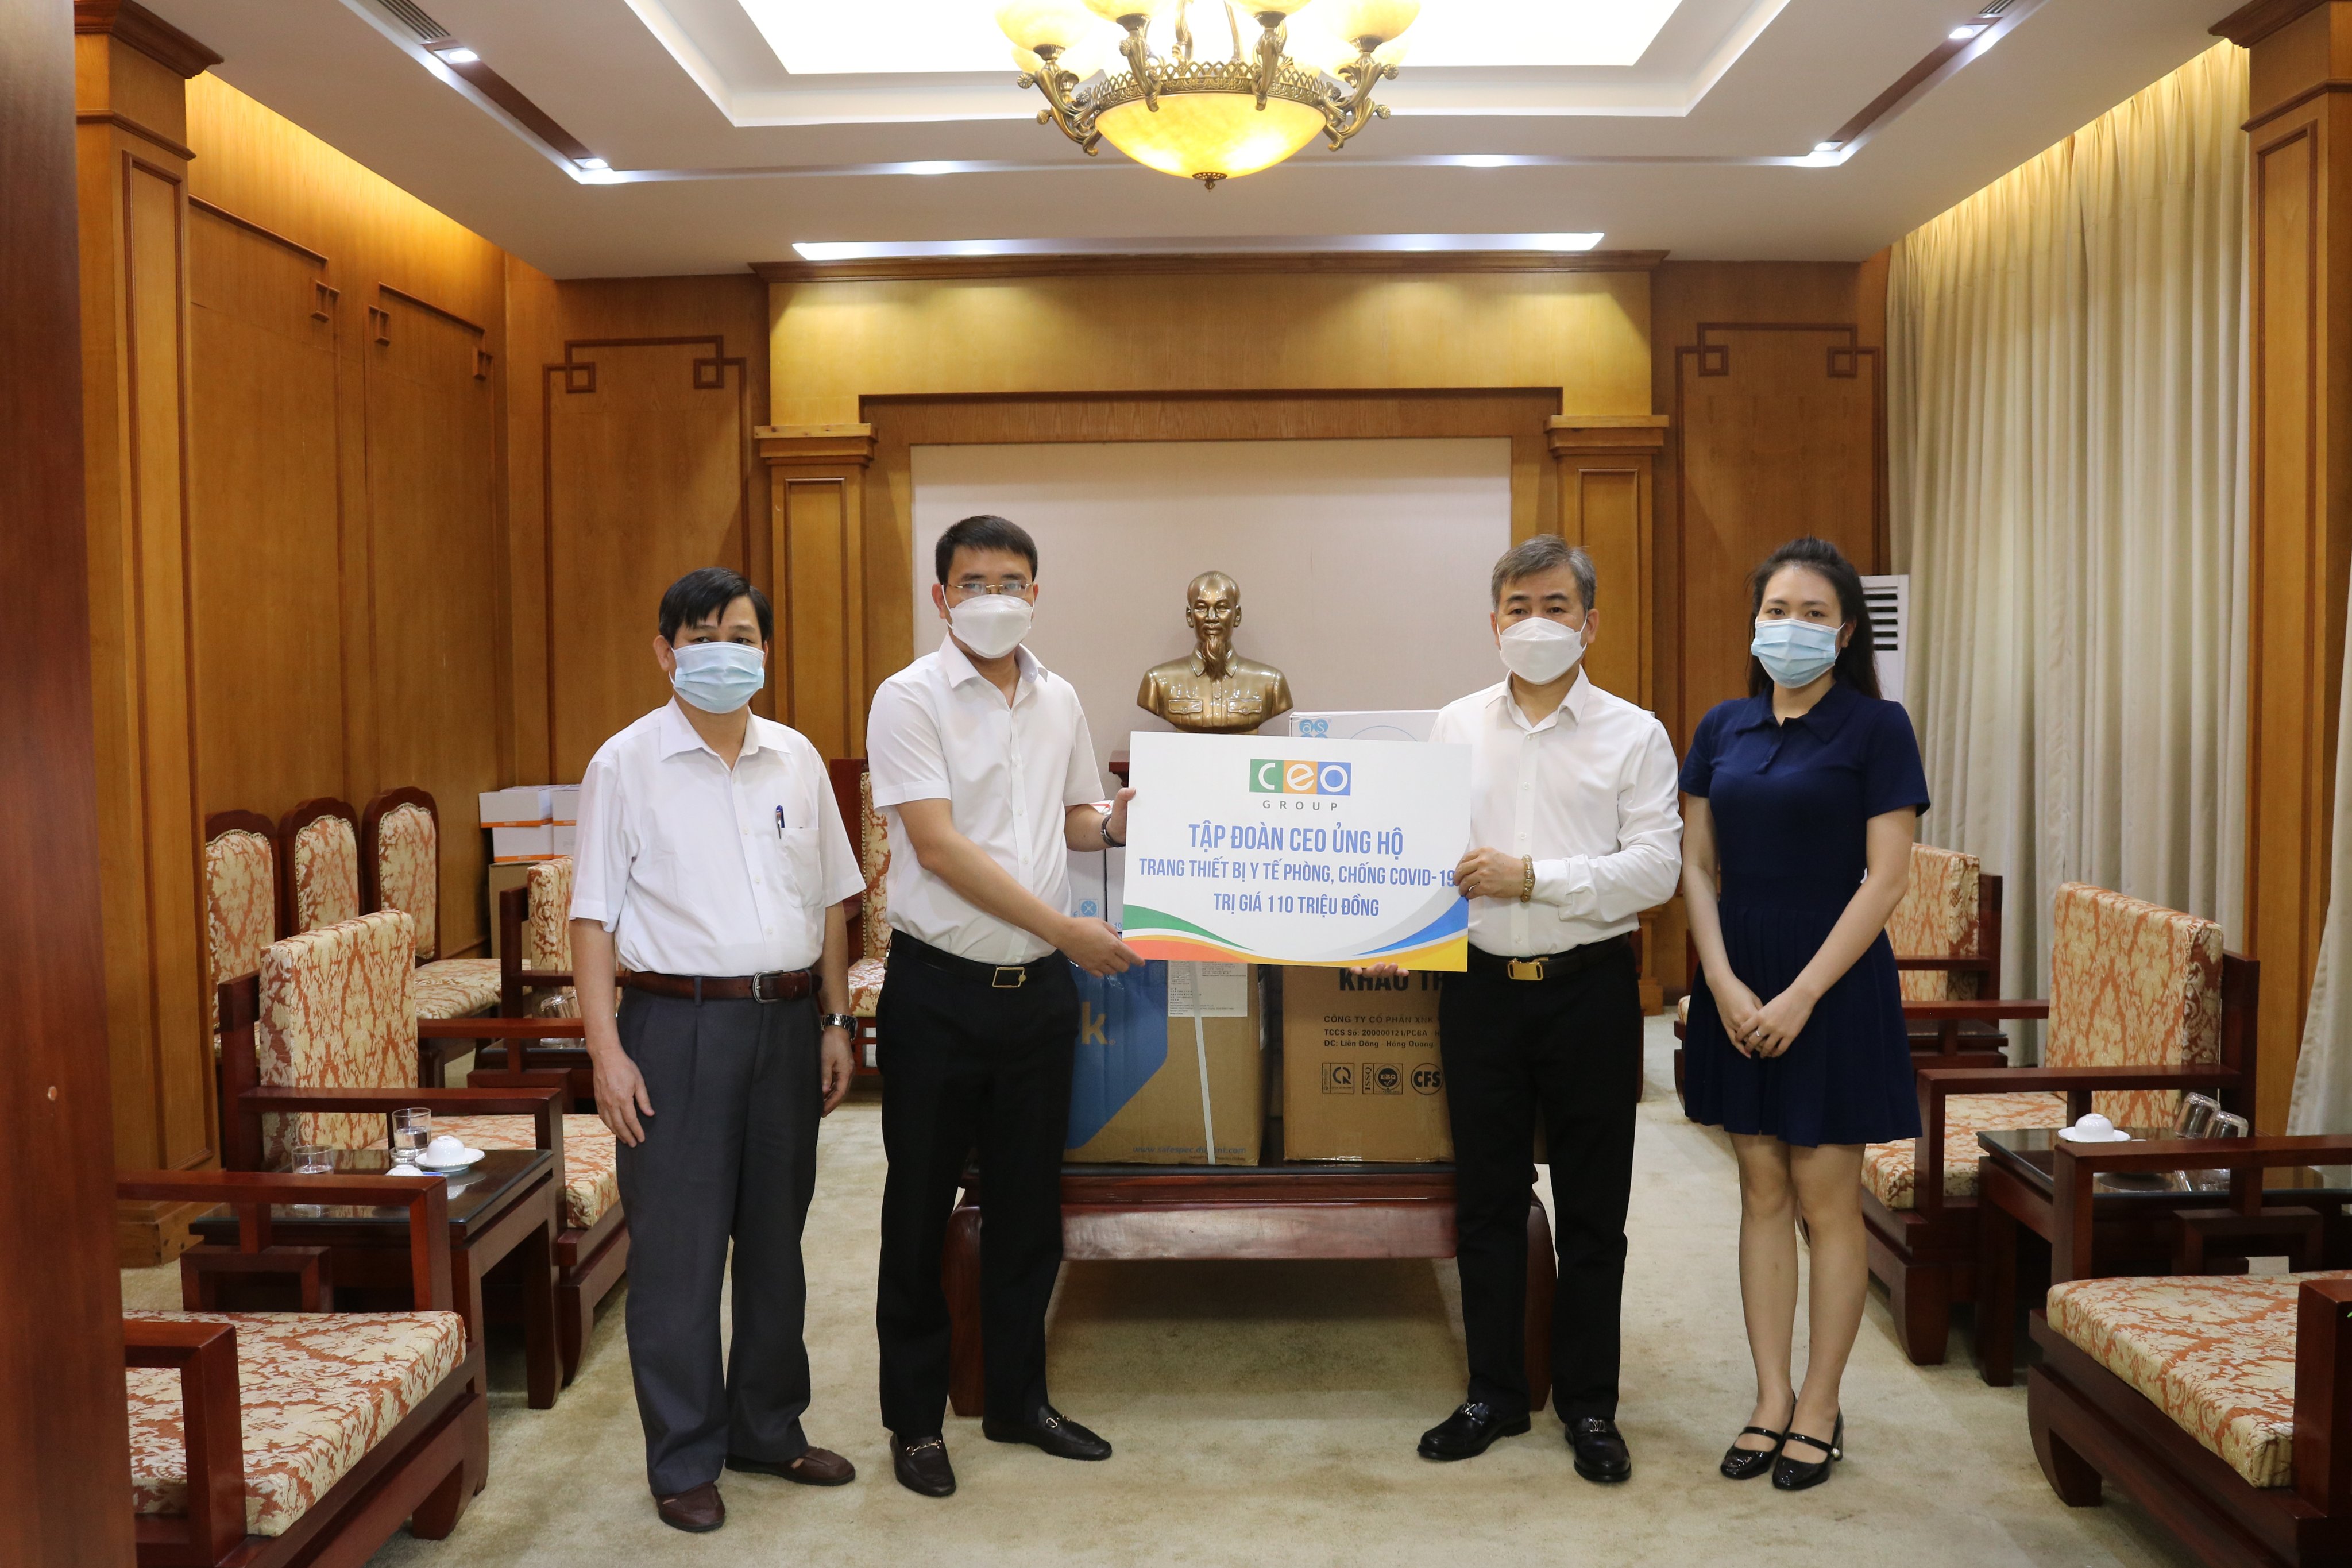 Tập đoàn CEO chung tay cùng quận Nam Từ Liêm, Hà Nội phòng, chống dịch Covid-19 - Tập đoàn CEO